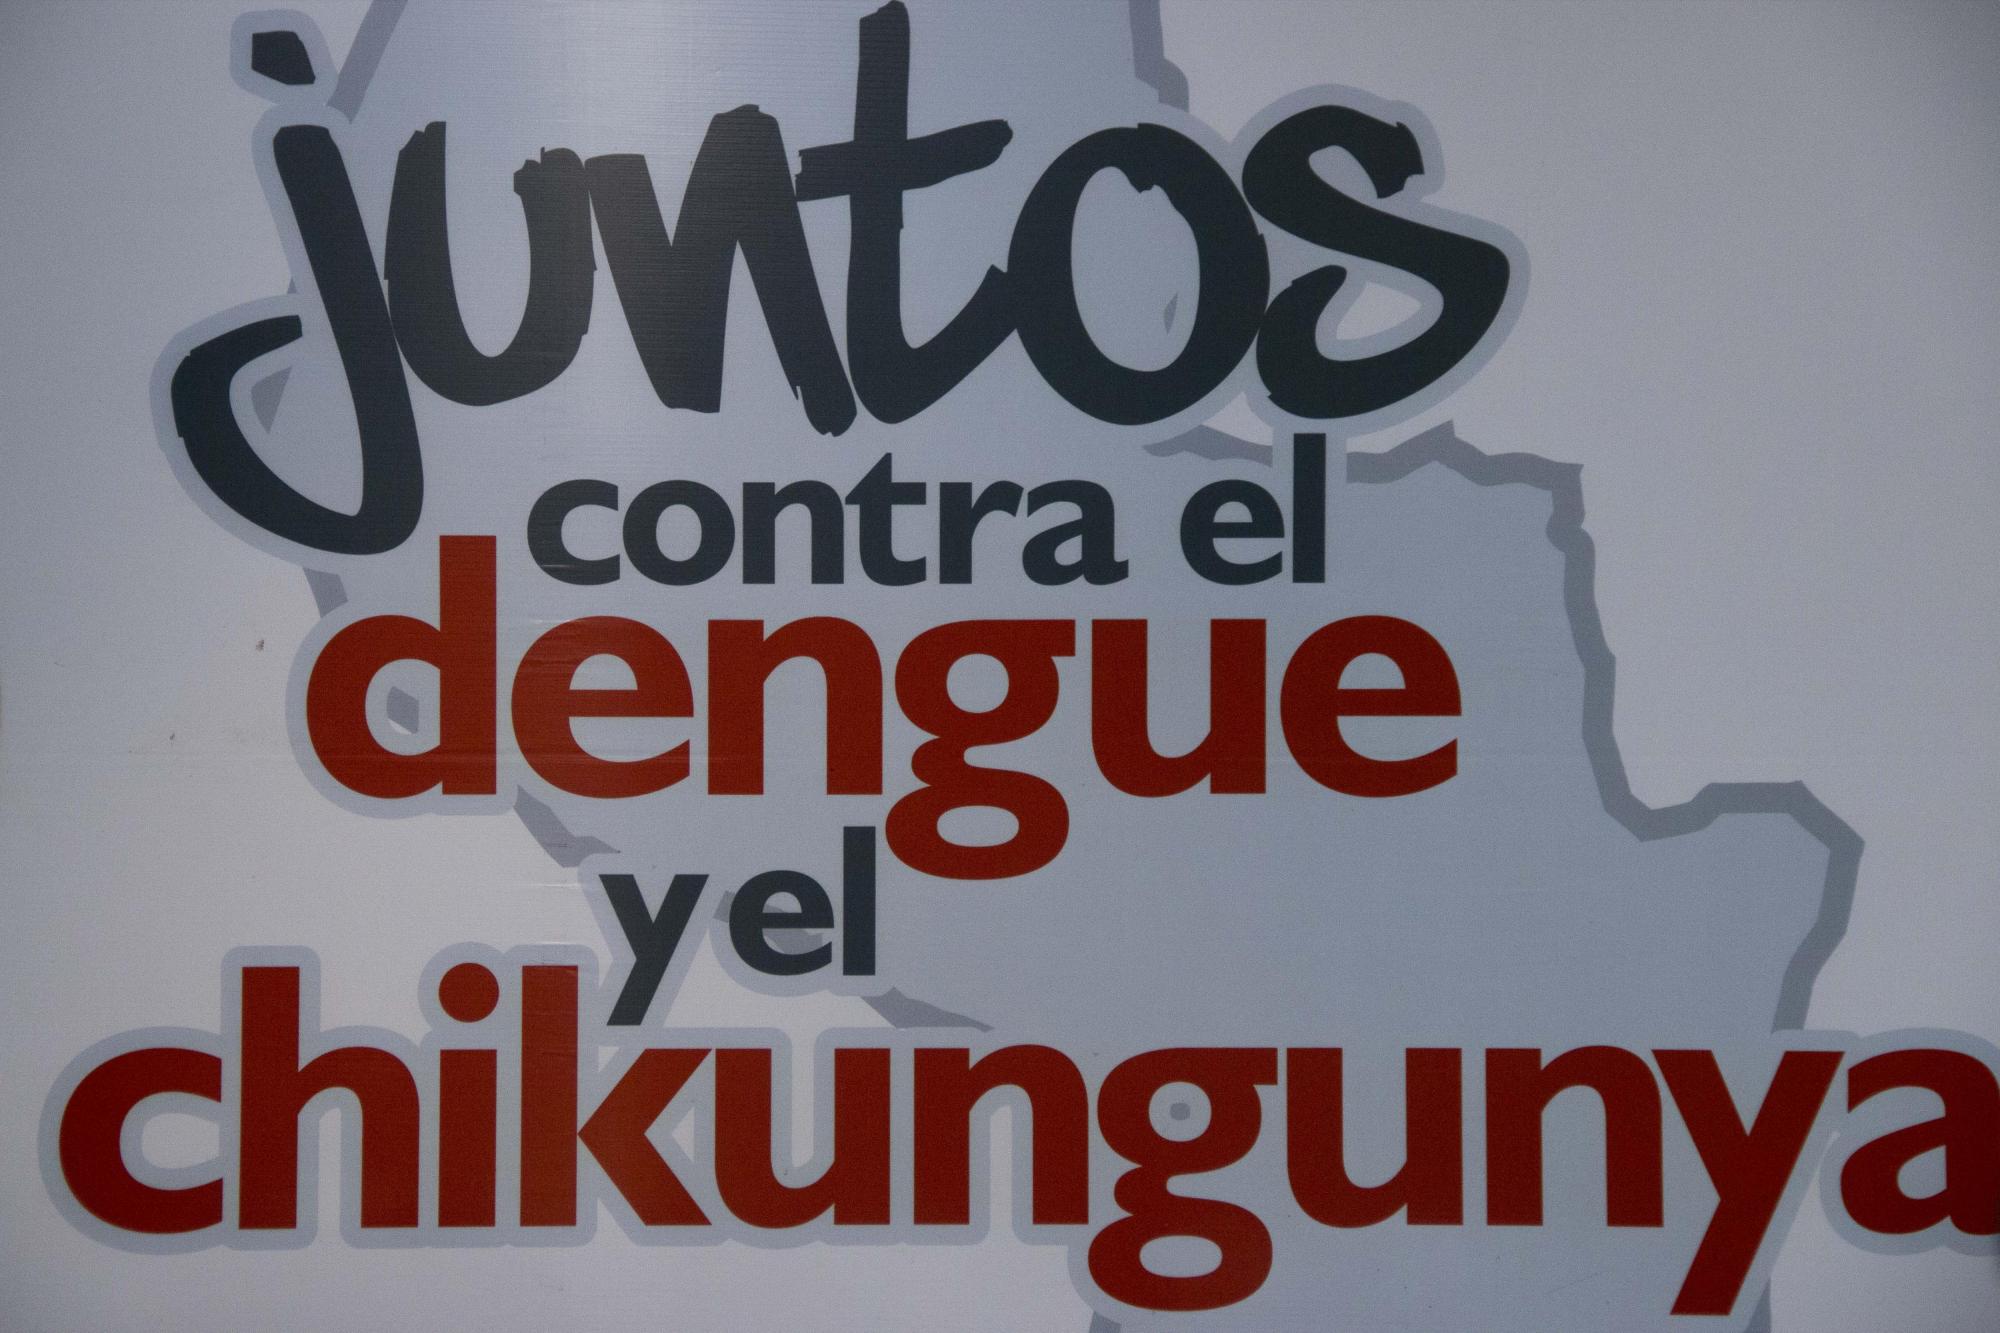 Contra el dengue y chikungunya en Paraguay